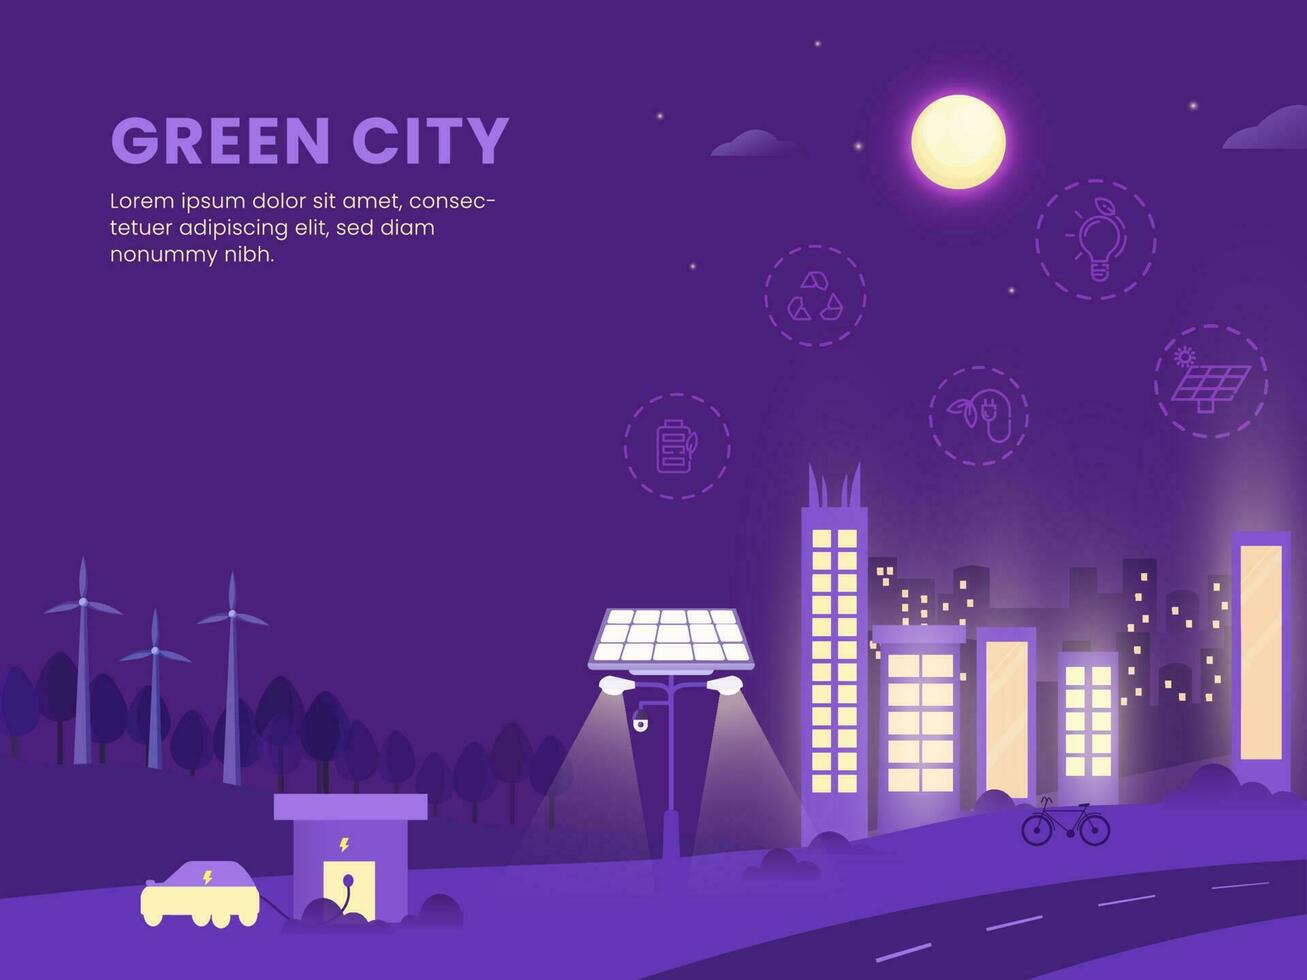 grön stad begrepp baserad affisch design med byggnader, sol- gata ljus och bil laddning station på lila full måne bakgrund. vektor